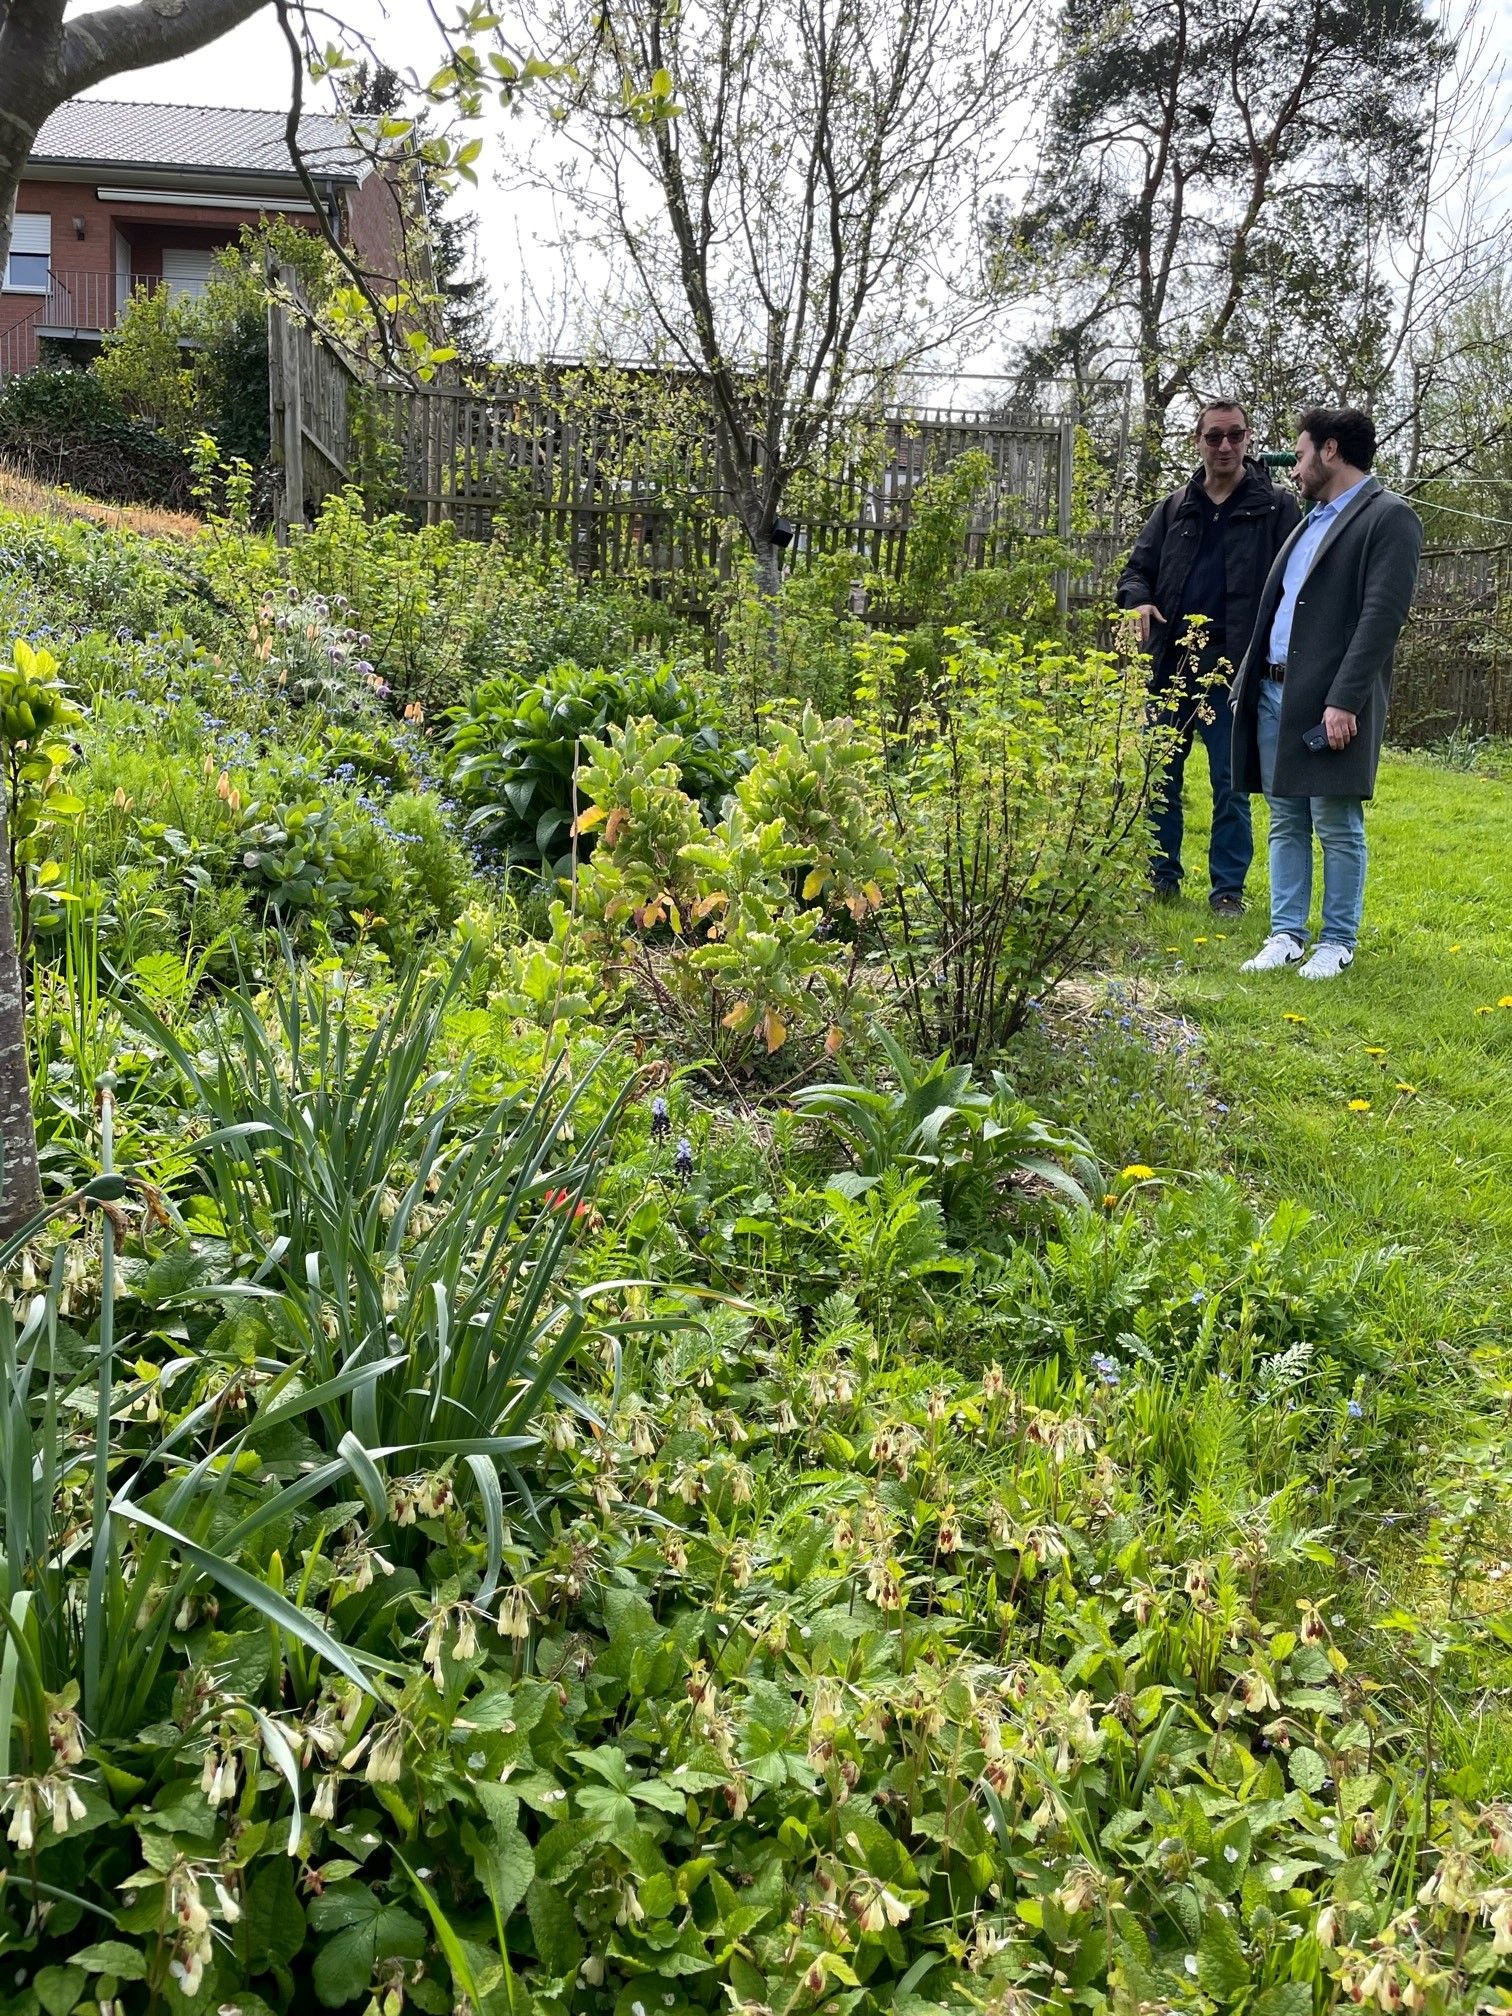 Inwoners kunnen hun tuin natuurlijk inrichten en voorstellen doen voor meer groen in de openbare ruimte